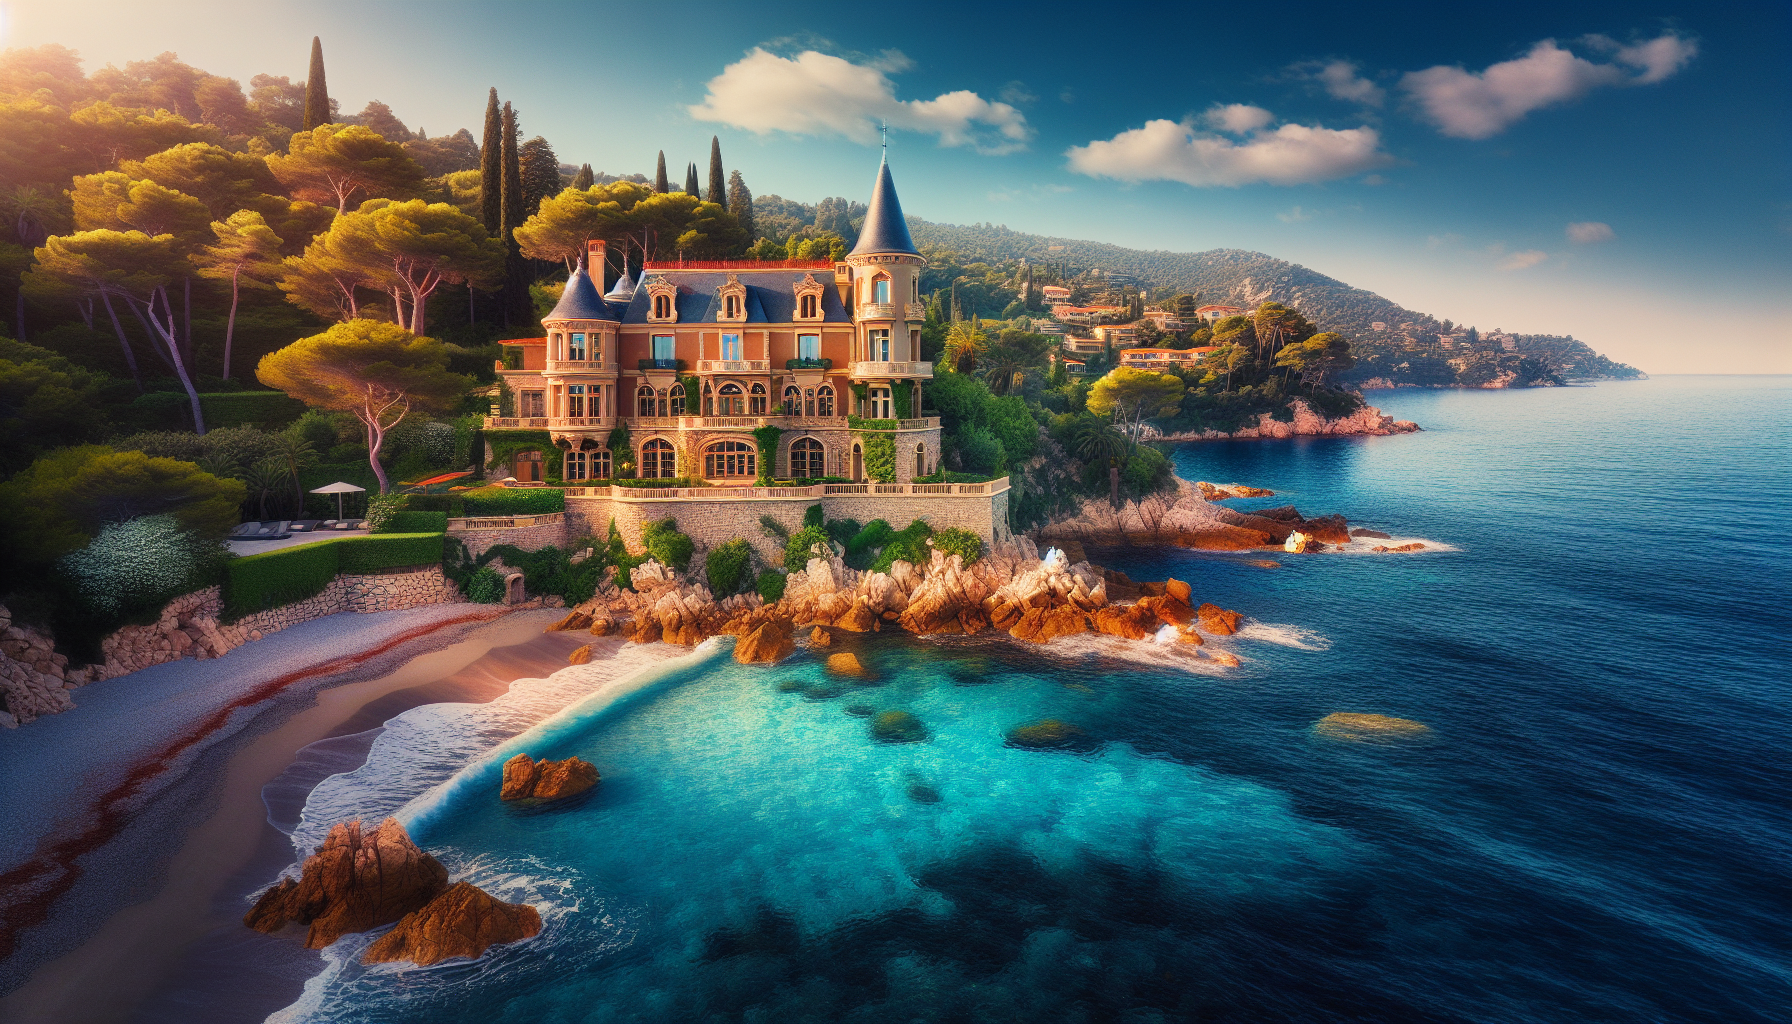 découvrez le château de théoule, le nouveau paradis 5 étoiles de la côte d'azur offrant un cadre luxueux et une vue imprenable sur la méditerranée. réservez votre séjour d'exception dès maintenant !